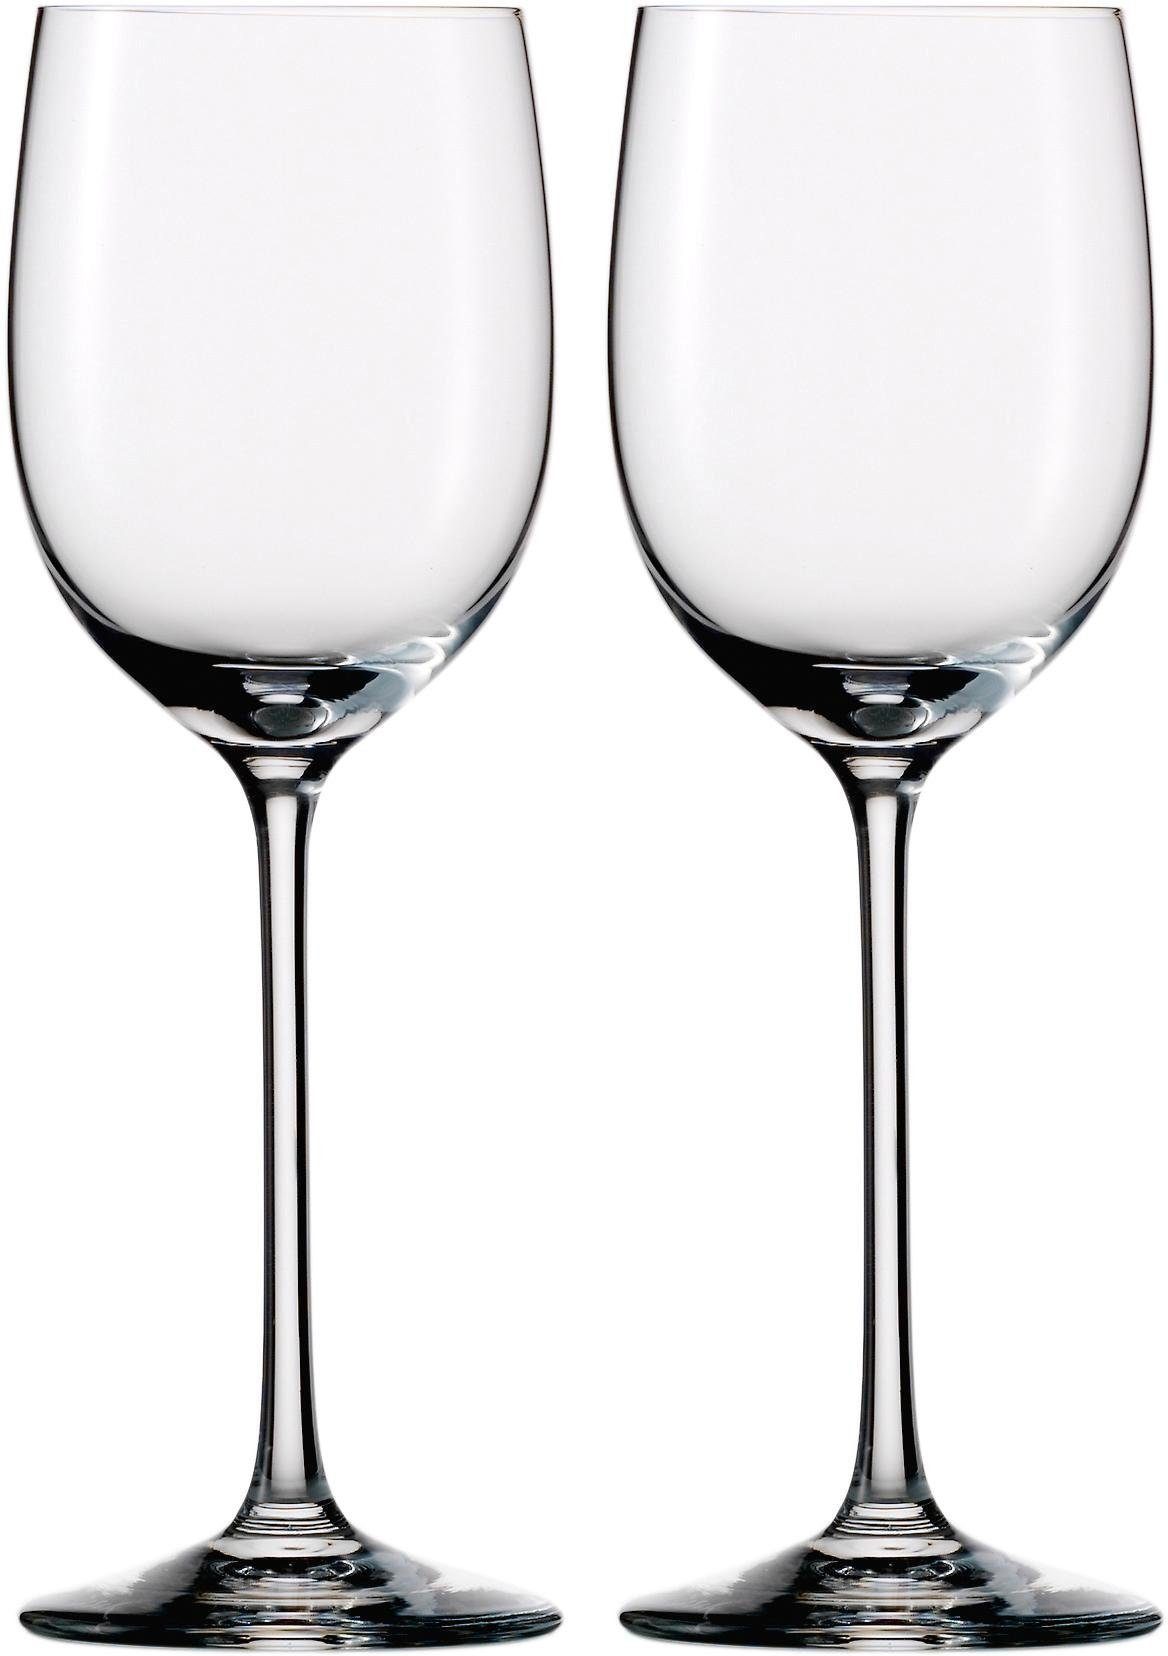 Jeunesse, bleifrei, 270 Kristallglas, ml, 2-teilig Weißweinglas Eisch